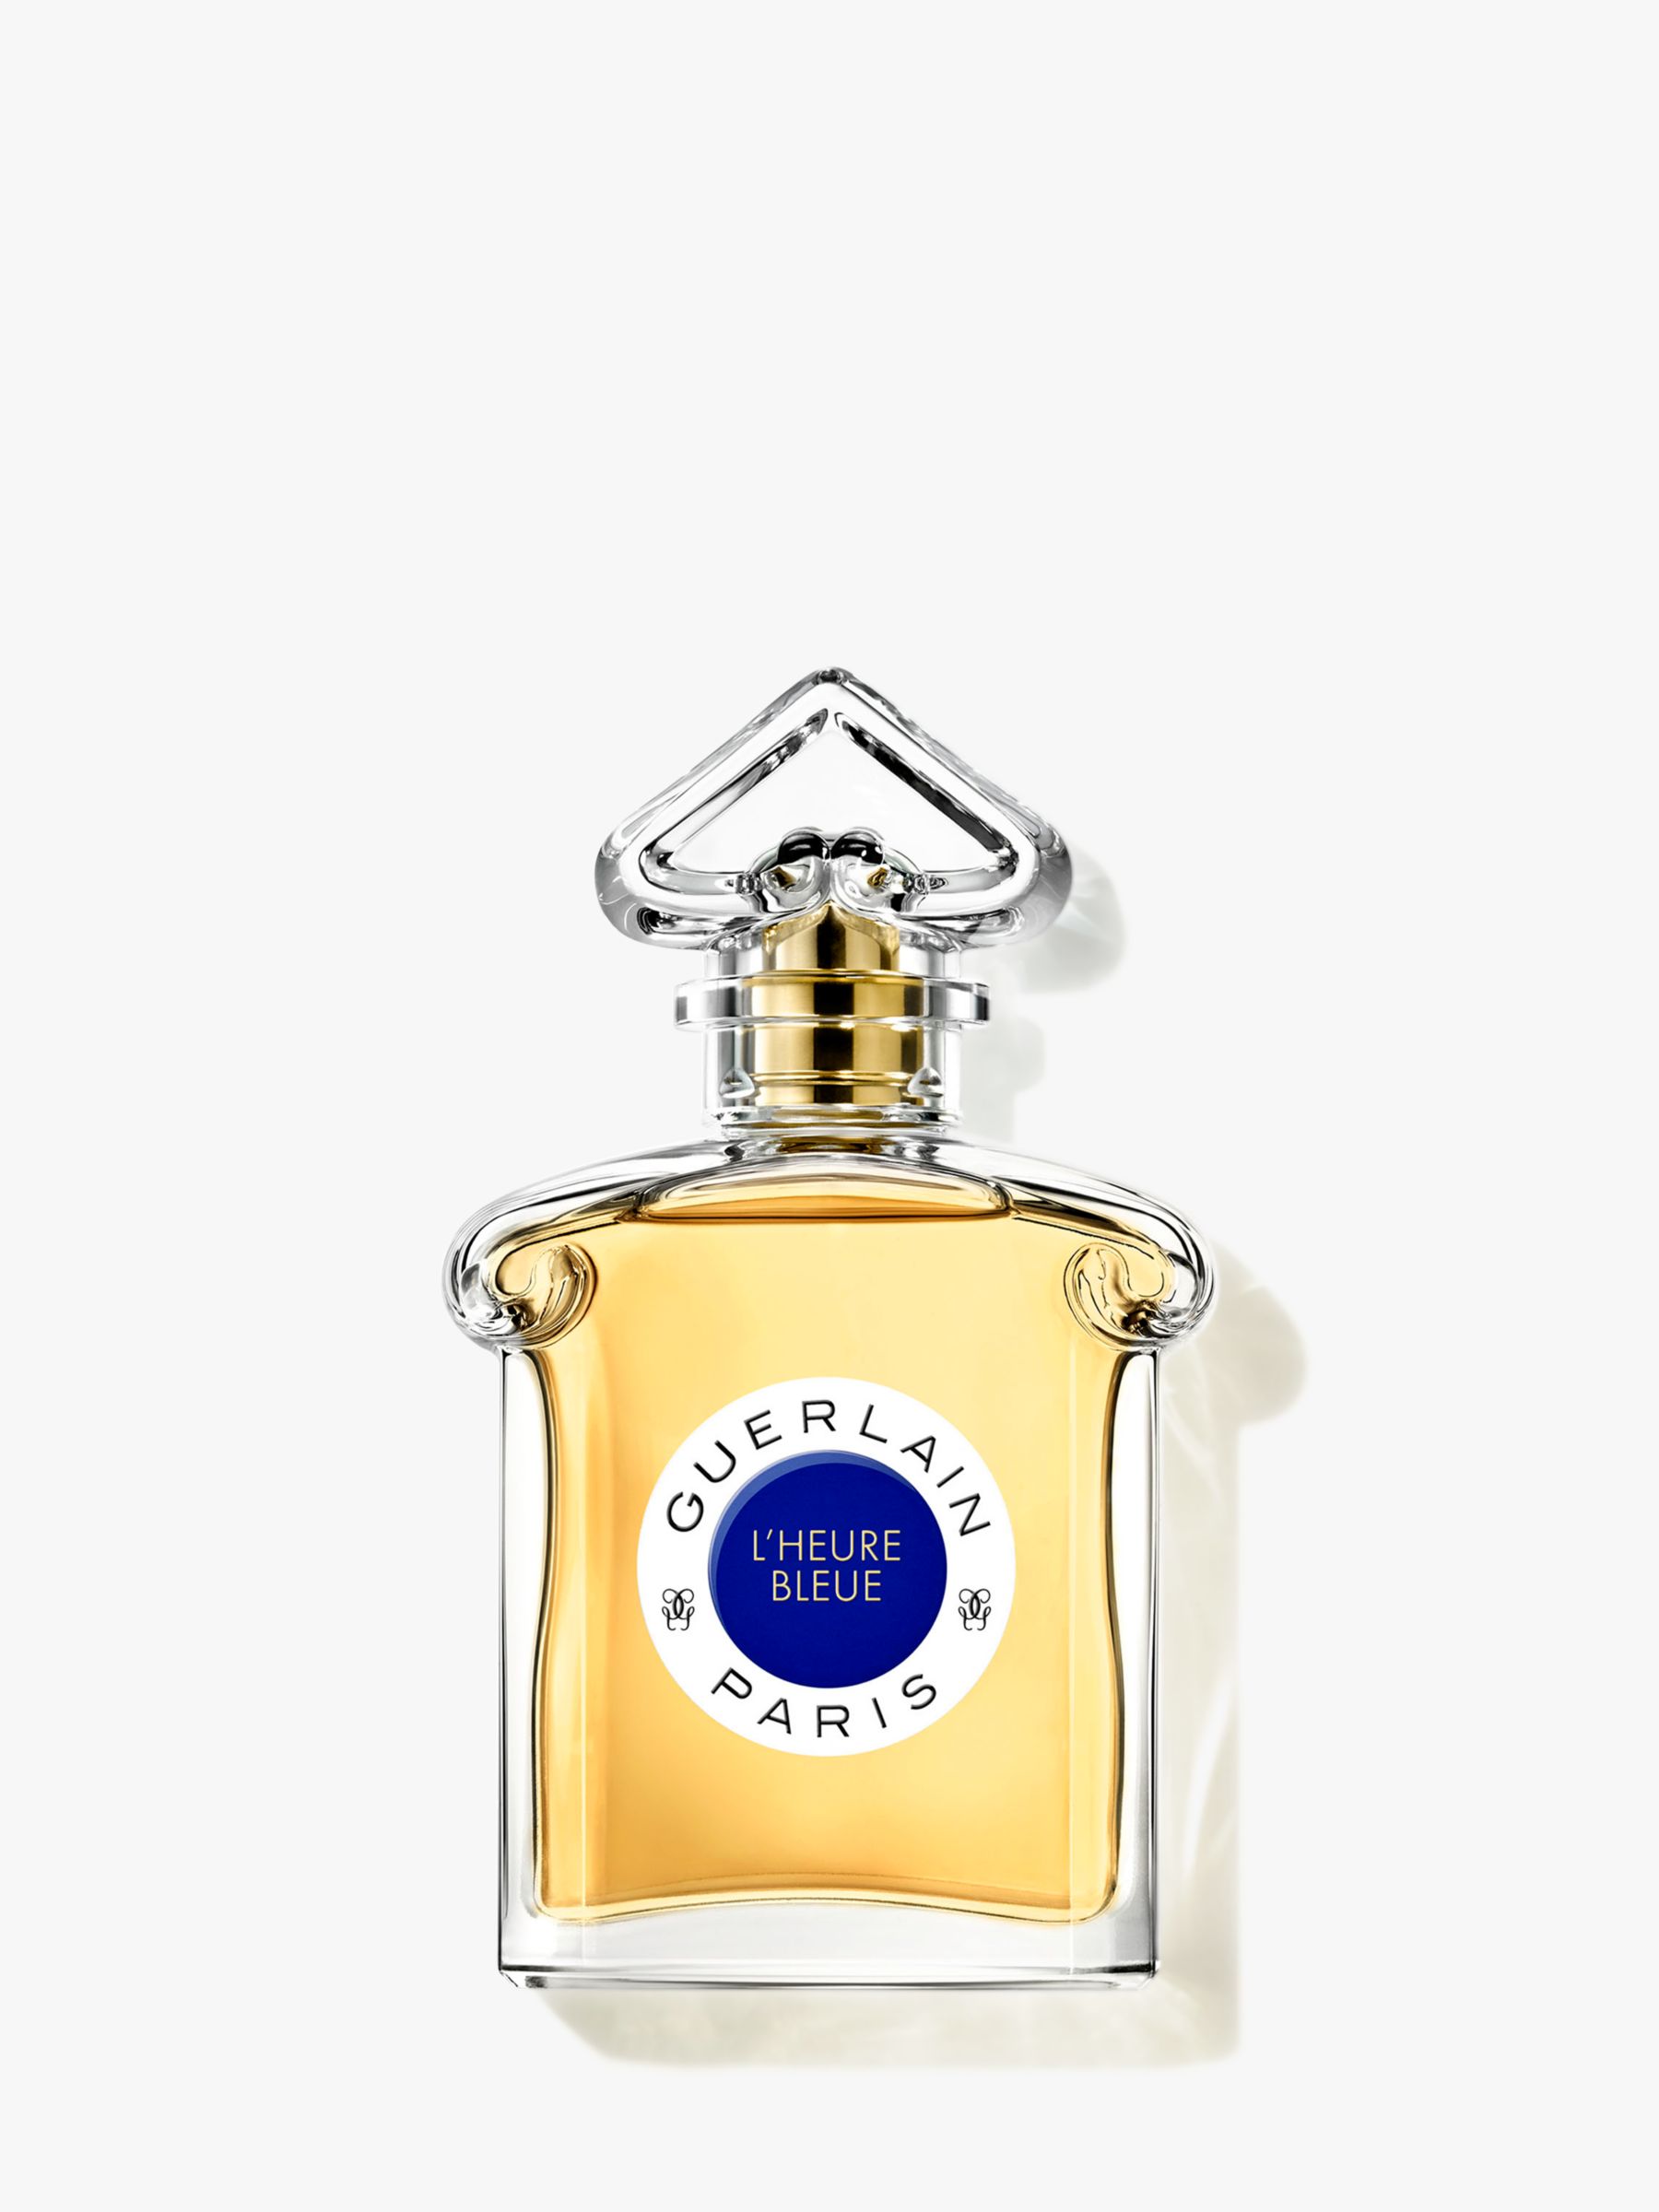 Guerlain L'Heure Bleue Eau de Parfum Spray, 75ml at John Lewis